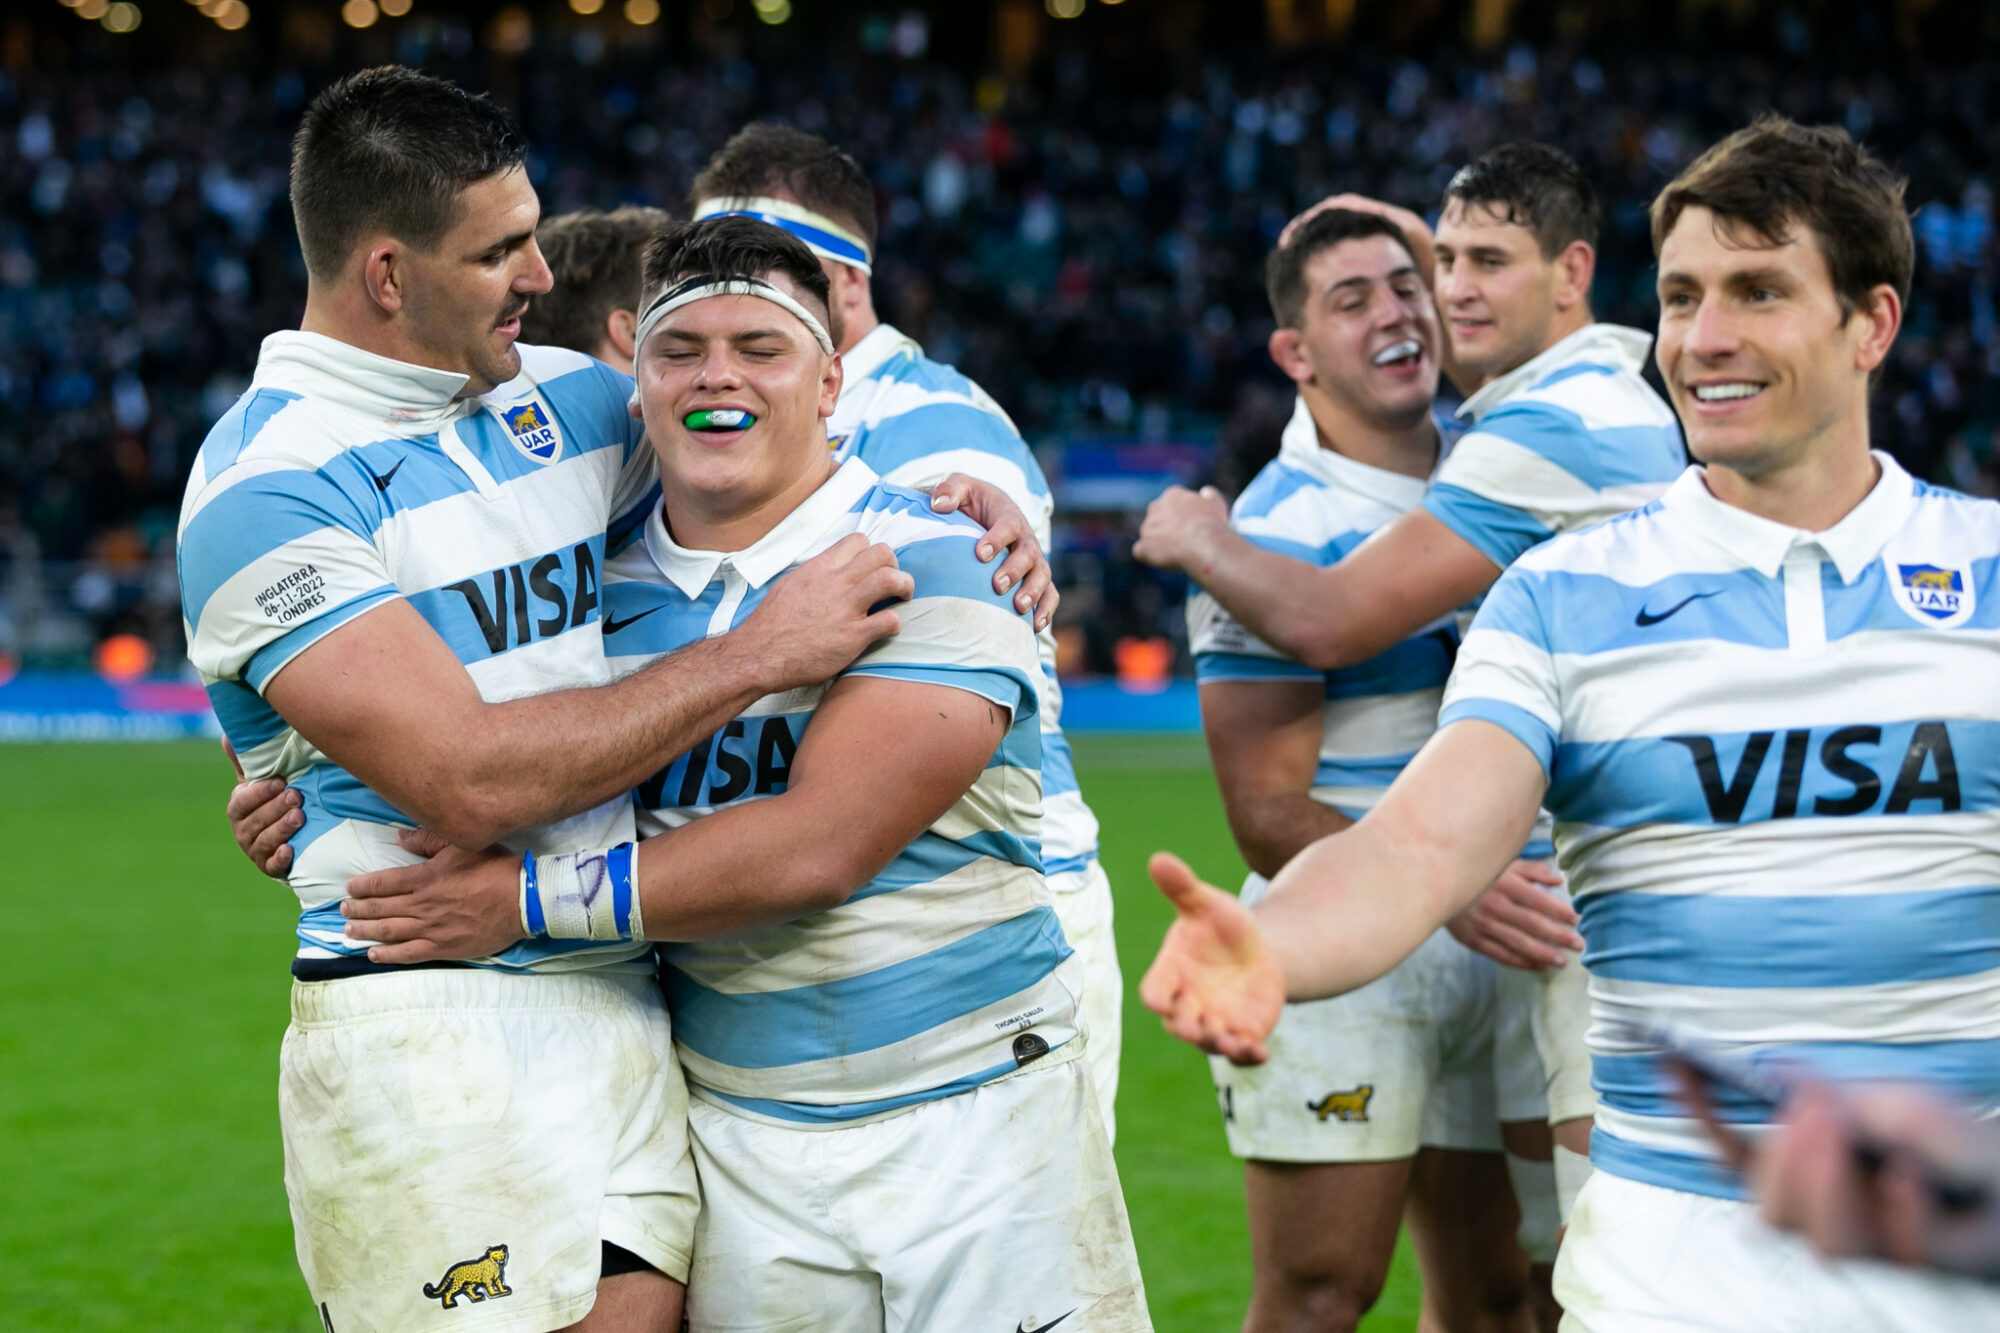 Los Pumas ascendieron al sexto lugar del ranking de la World Rugby tras el triunfo ante Inglaterra